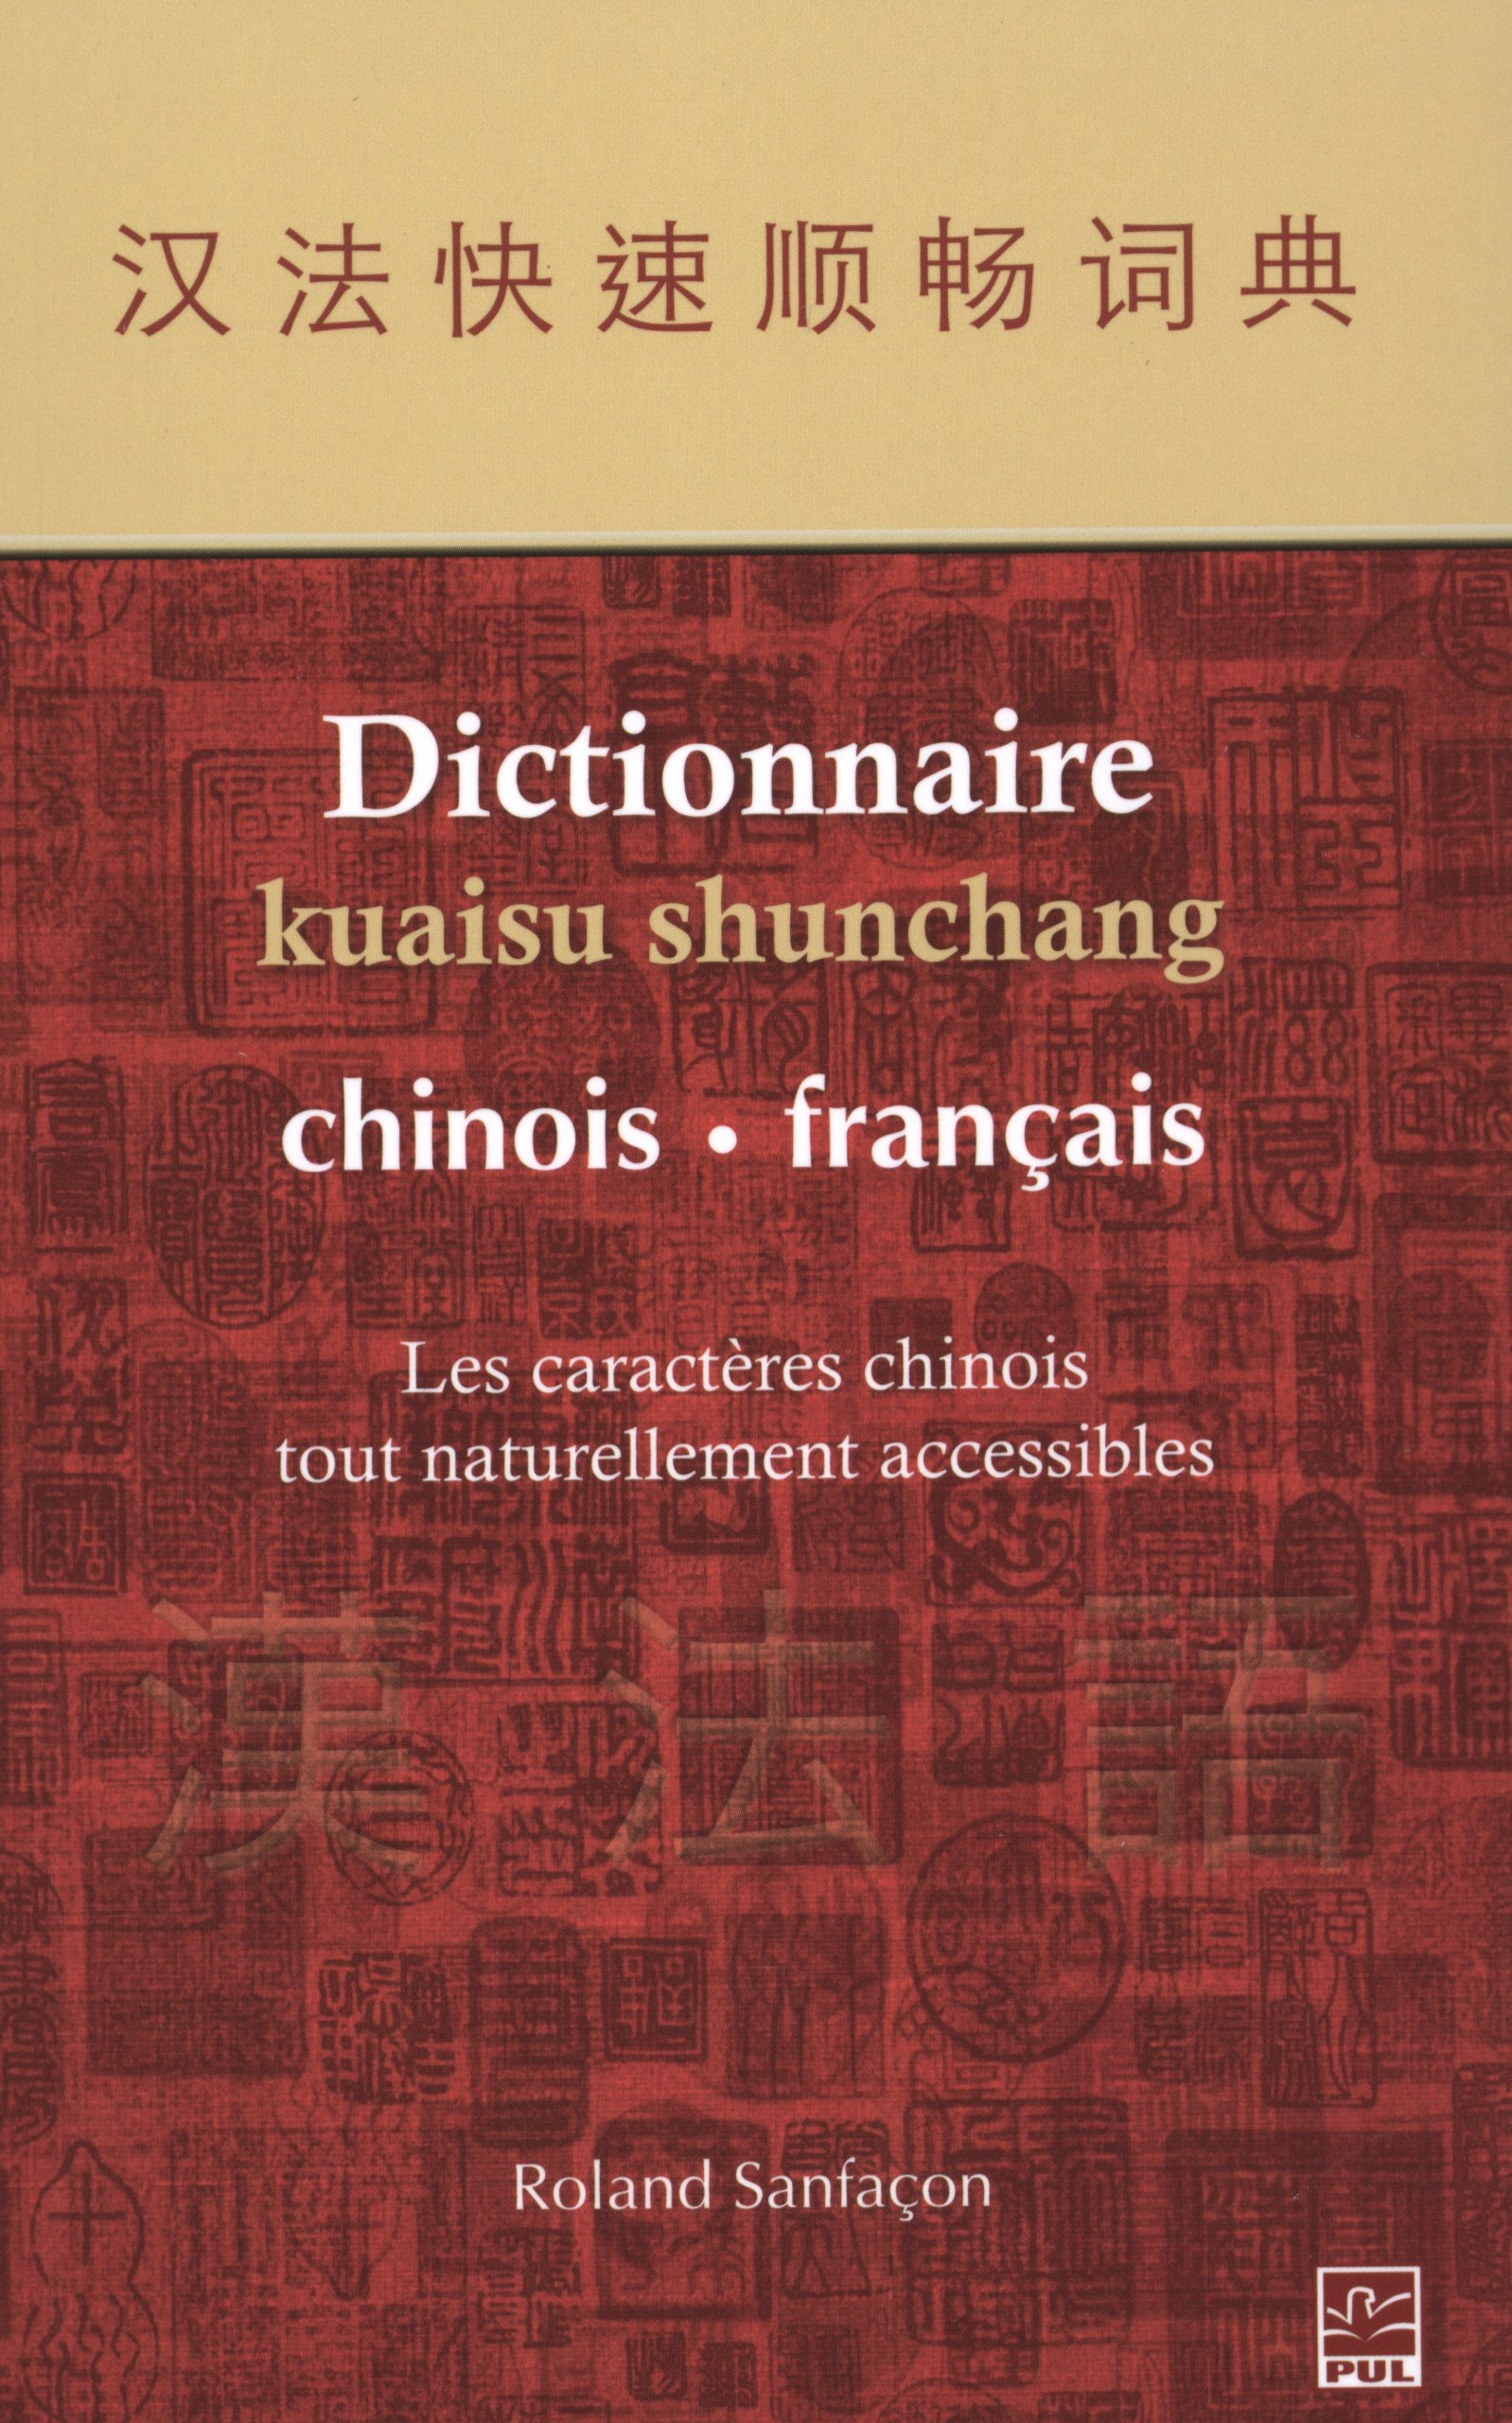 Dictionnaire kuaisu shunchang, chinois - français : caractères chinois tout naturellement accessible